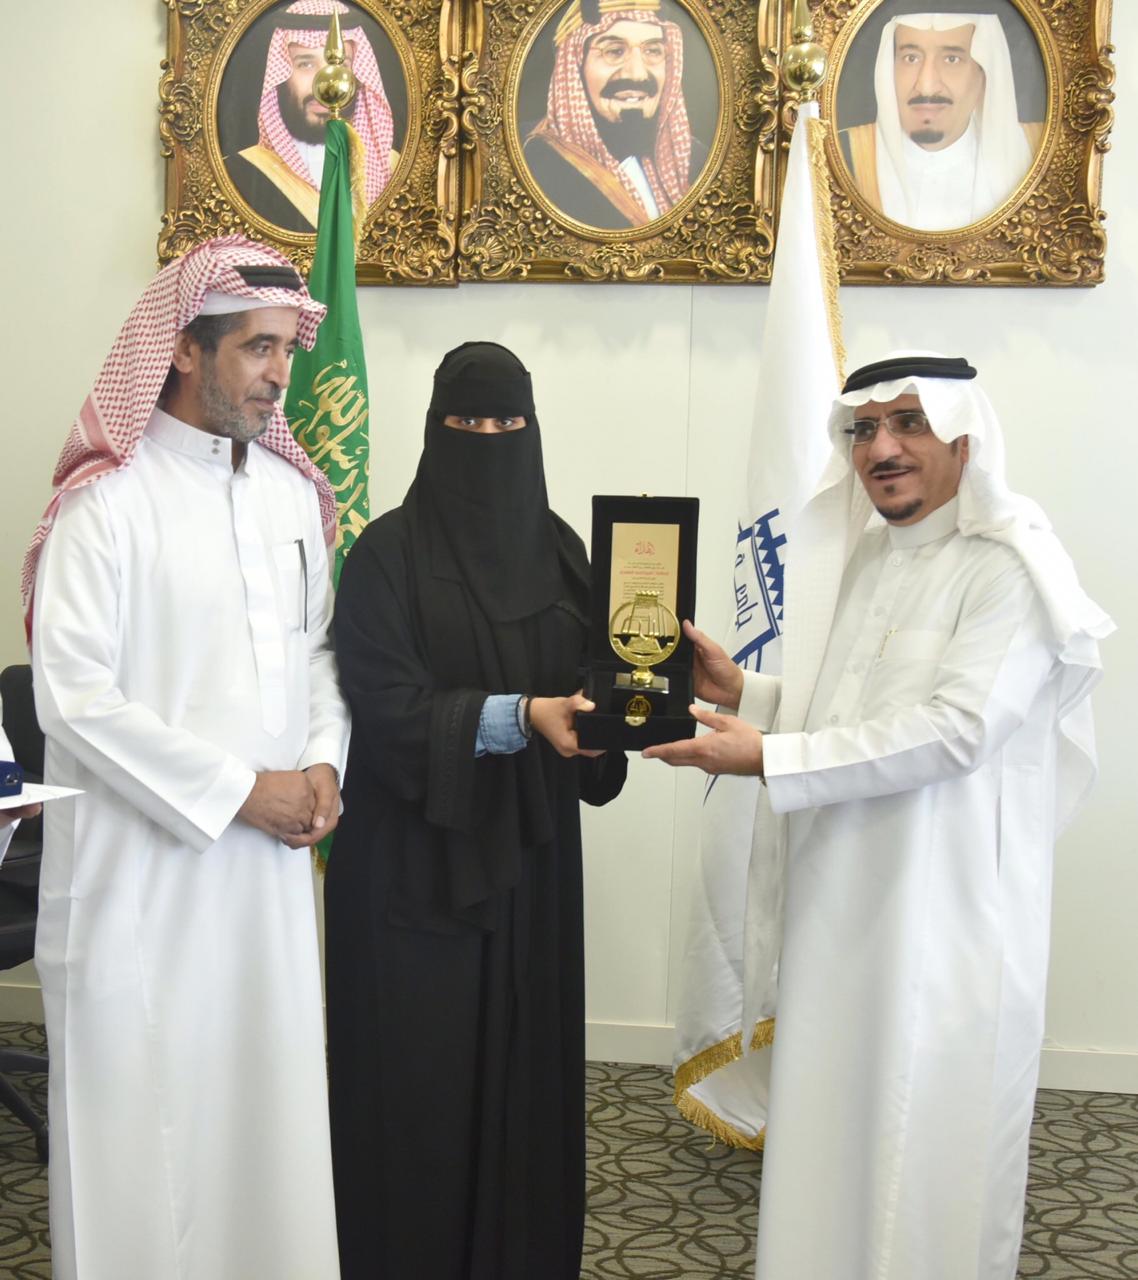 تقديراً لما قامت به من عمل إنساني : مدير جامعة الباحة يُكرّم الطالبة أميرة الغامدي